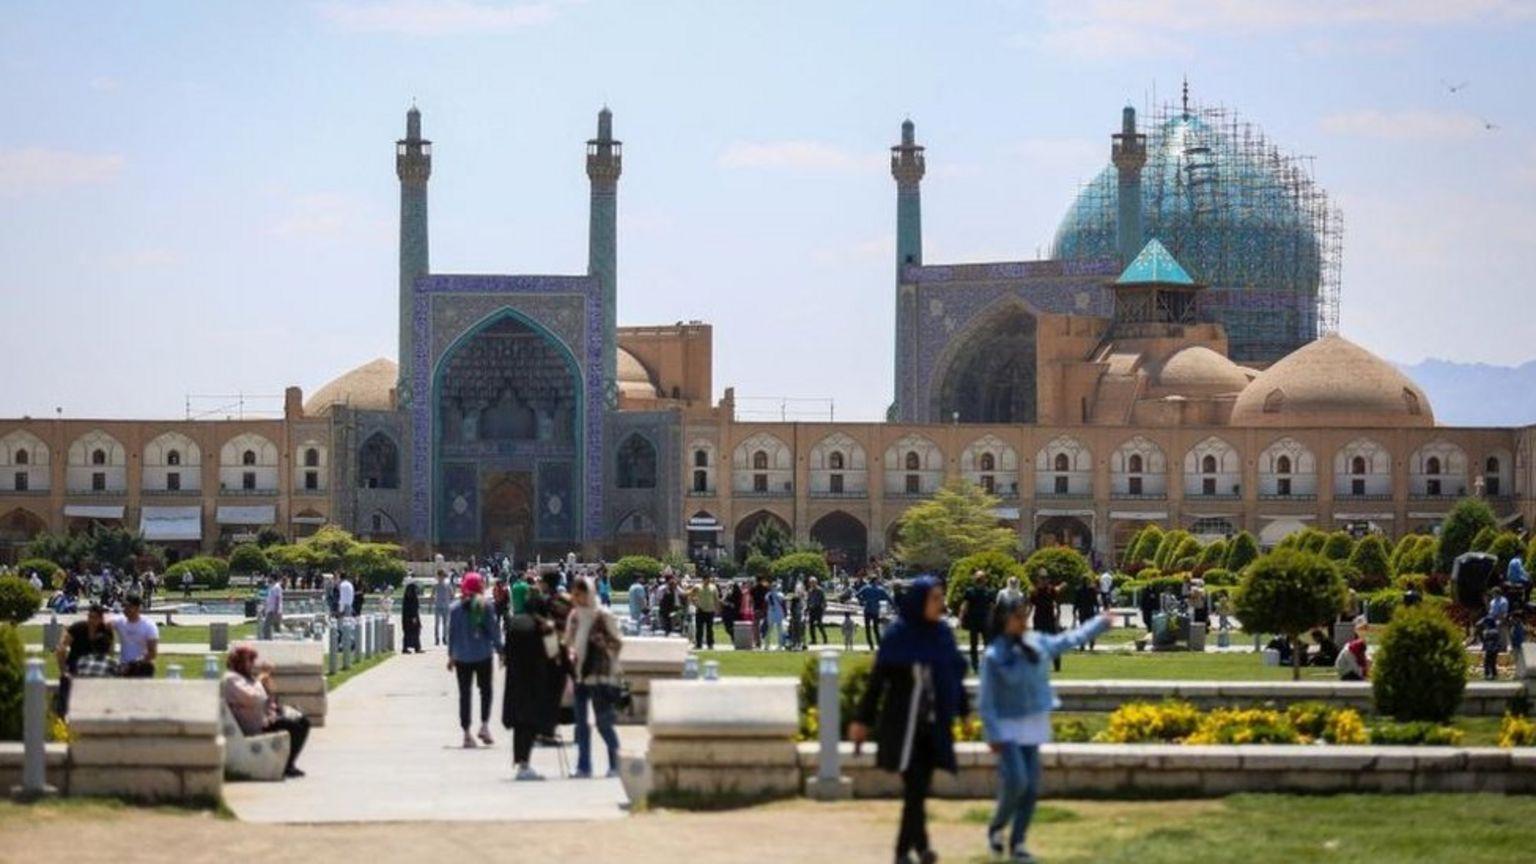 qual importância estratégica de isfahan, cidade iraniana alvo do ataque atribuído a israel